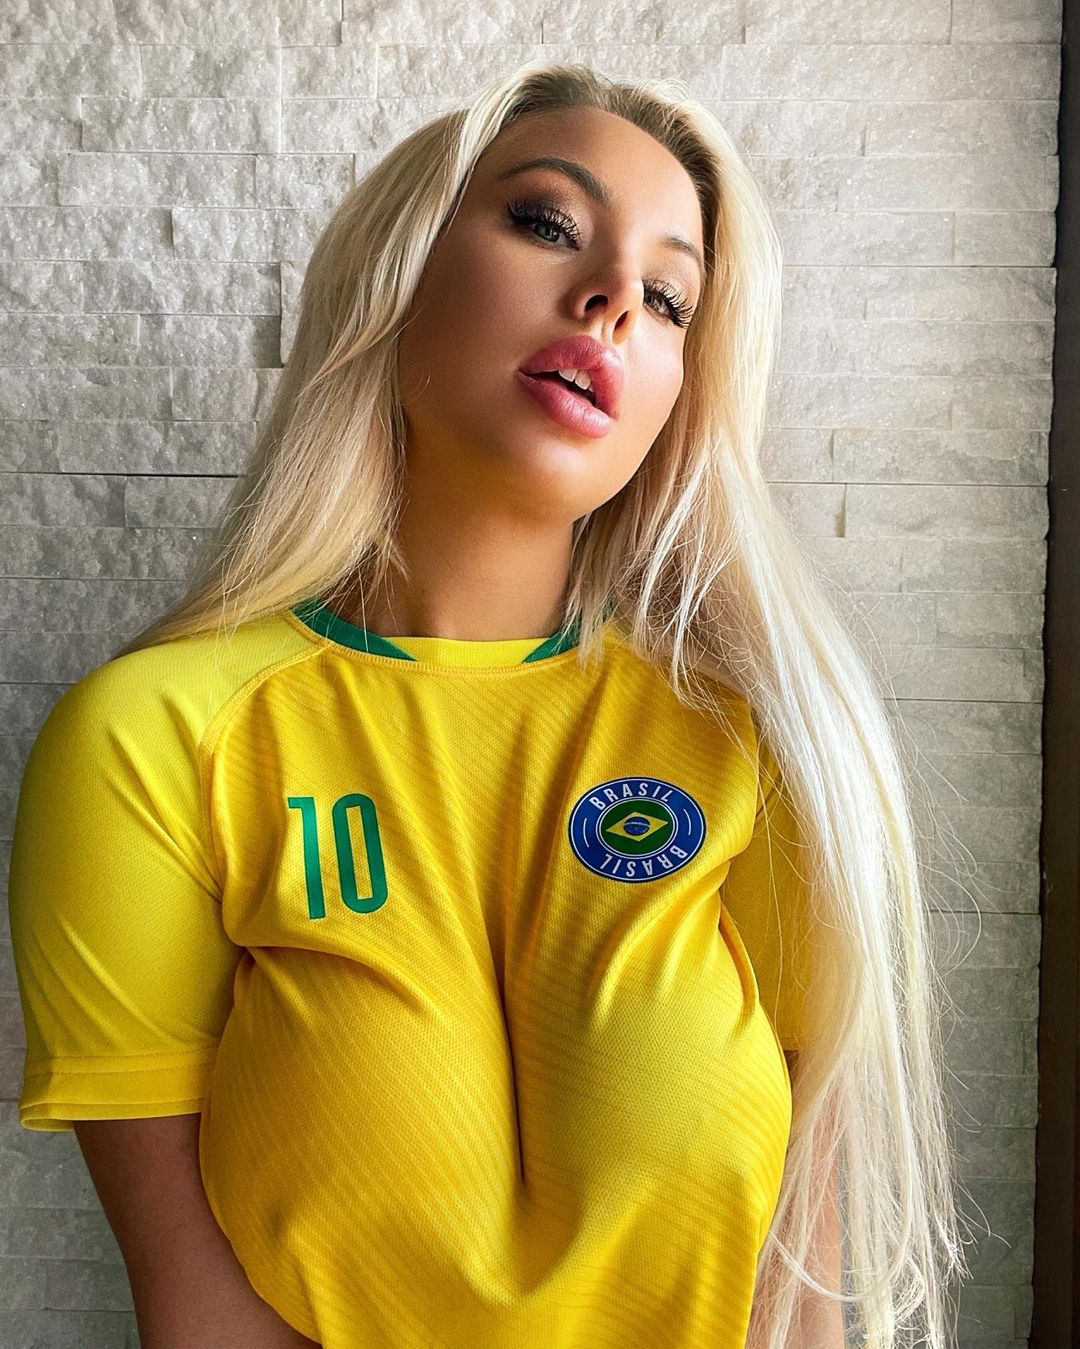 Пишногруда блондинка у футболках різних команд із футболу